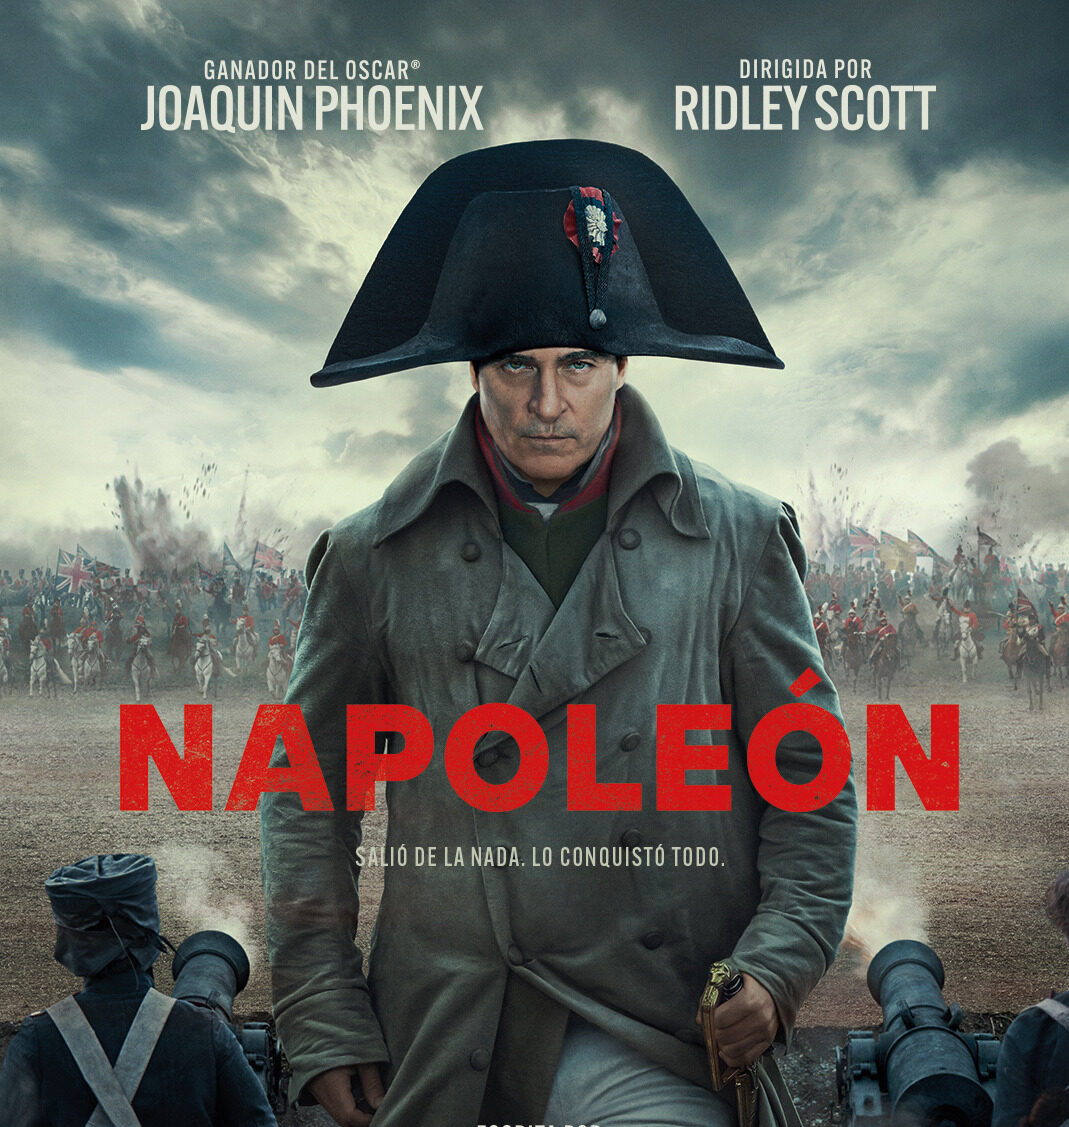 No te pierdas estas tres escenas clave de la película Napoleón Cinerama